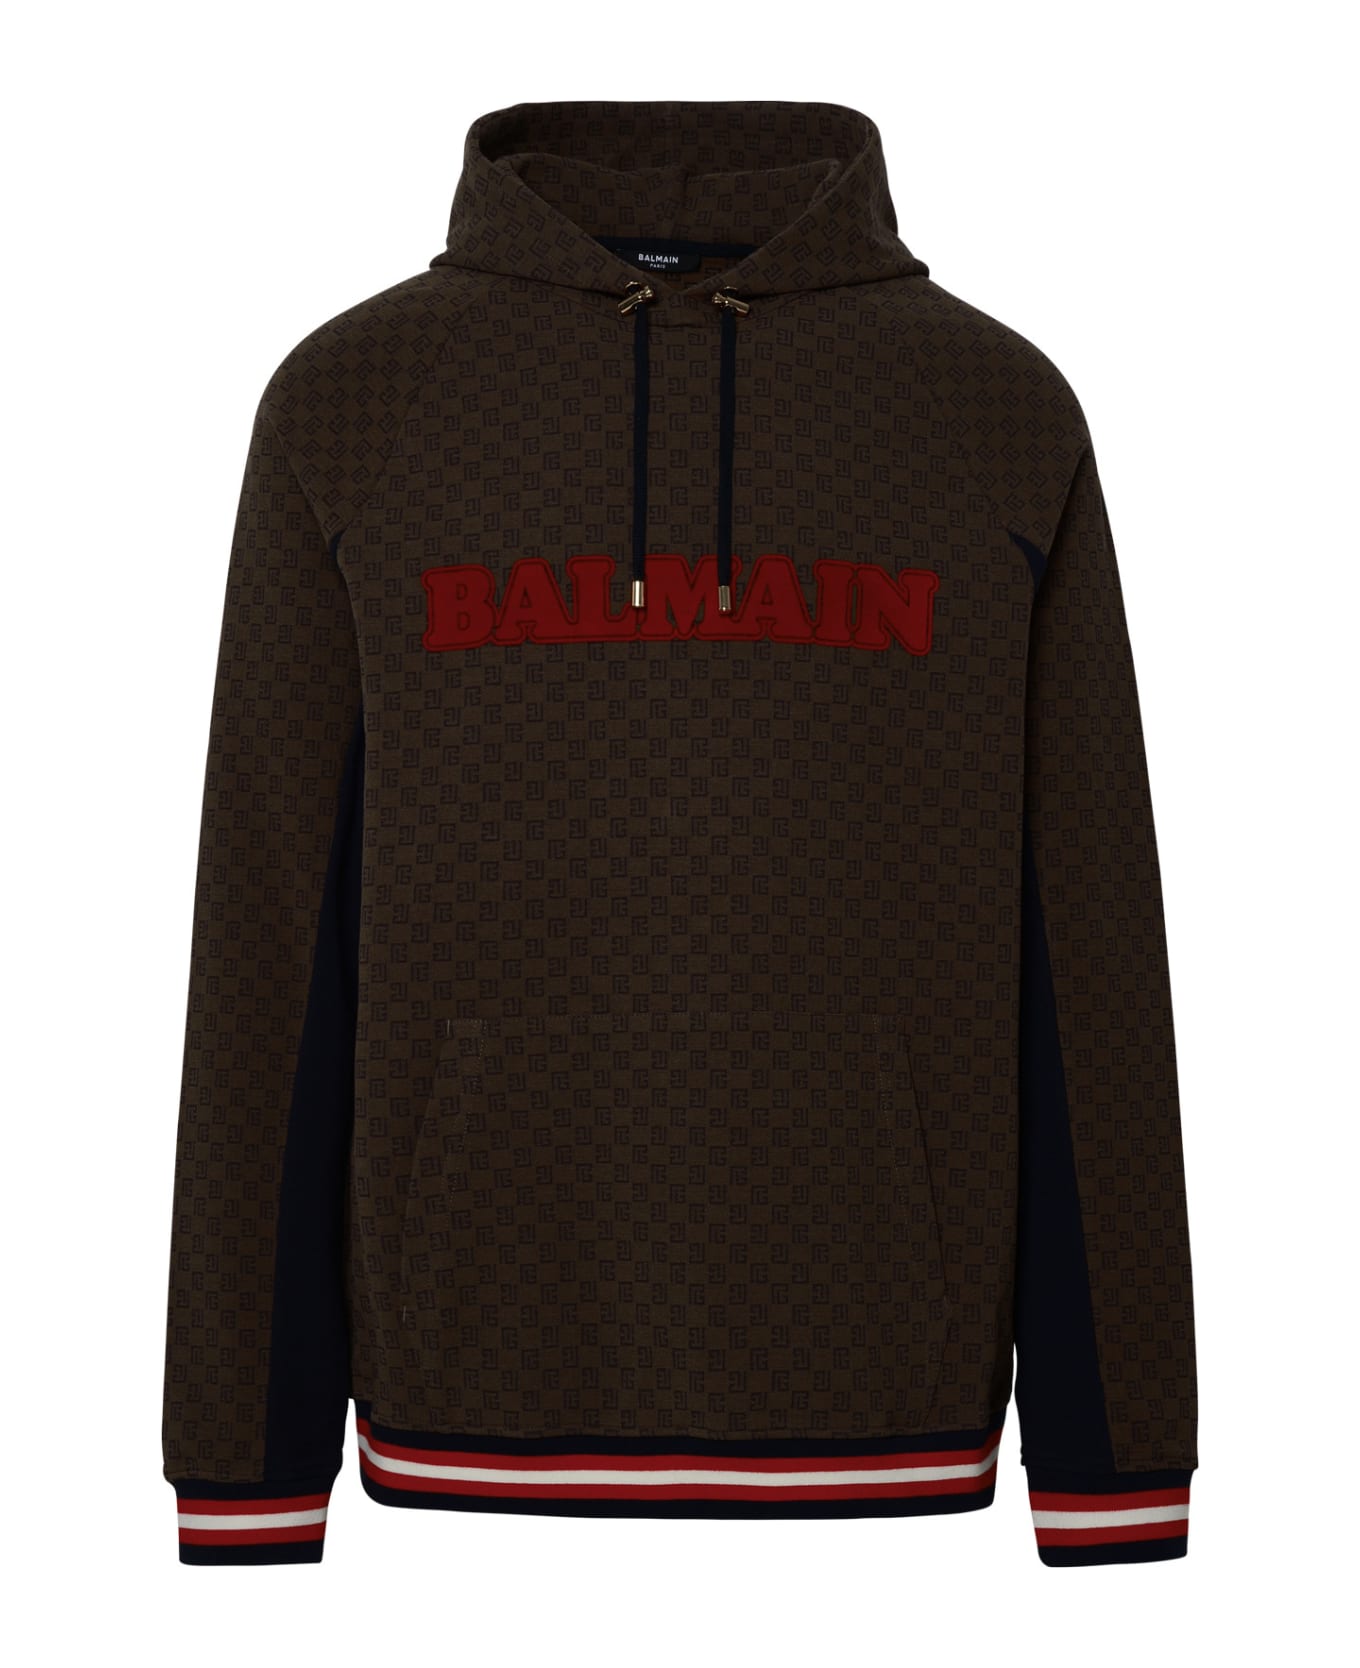 Balmain Brown Cotton Blend Sweatshirt - Marron/marron foncè/marine/rou